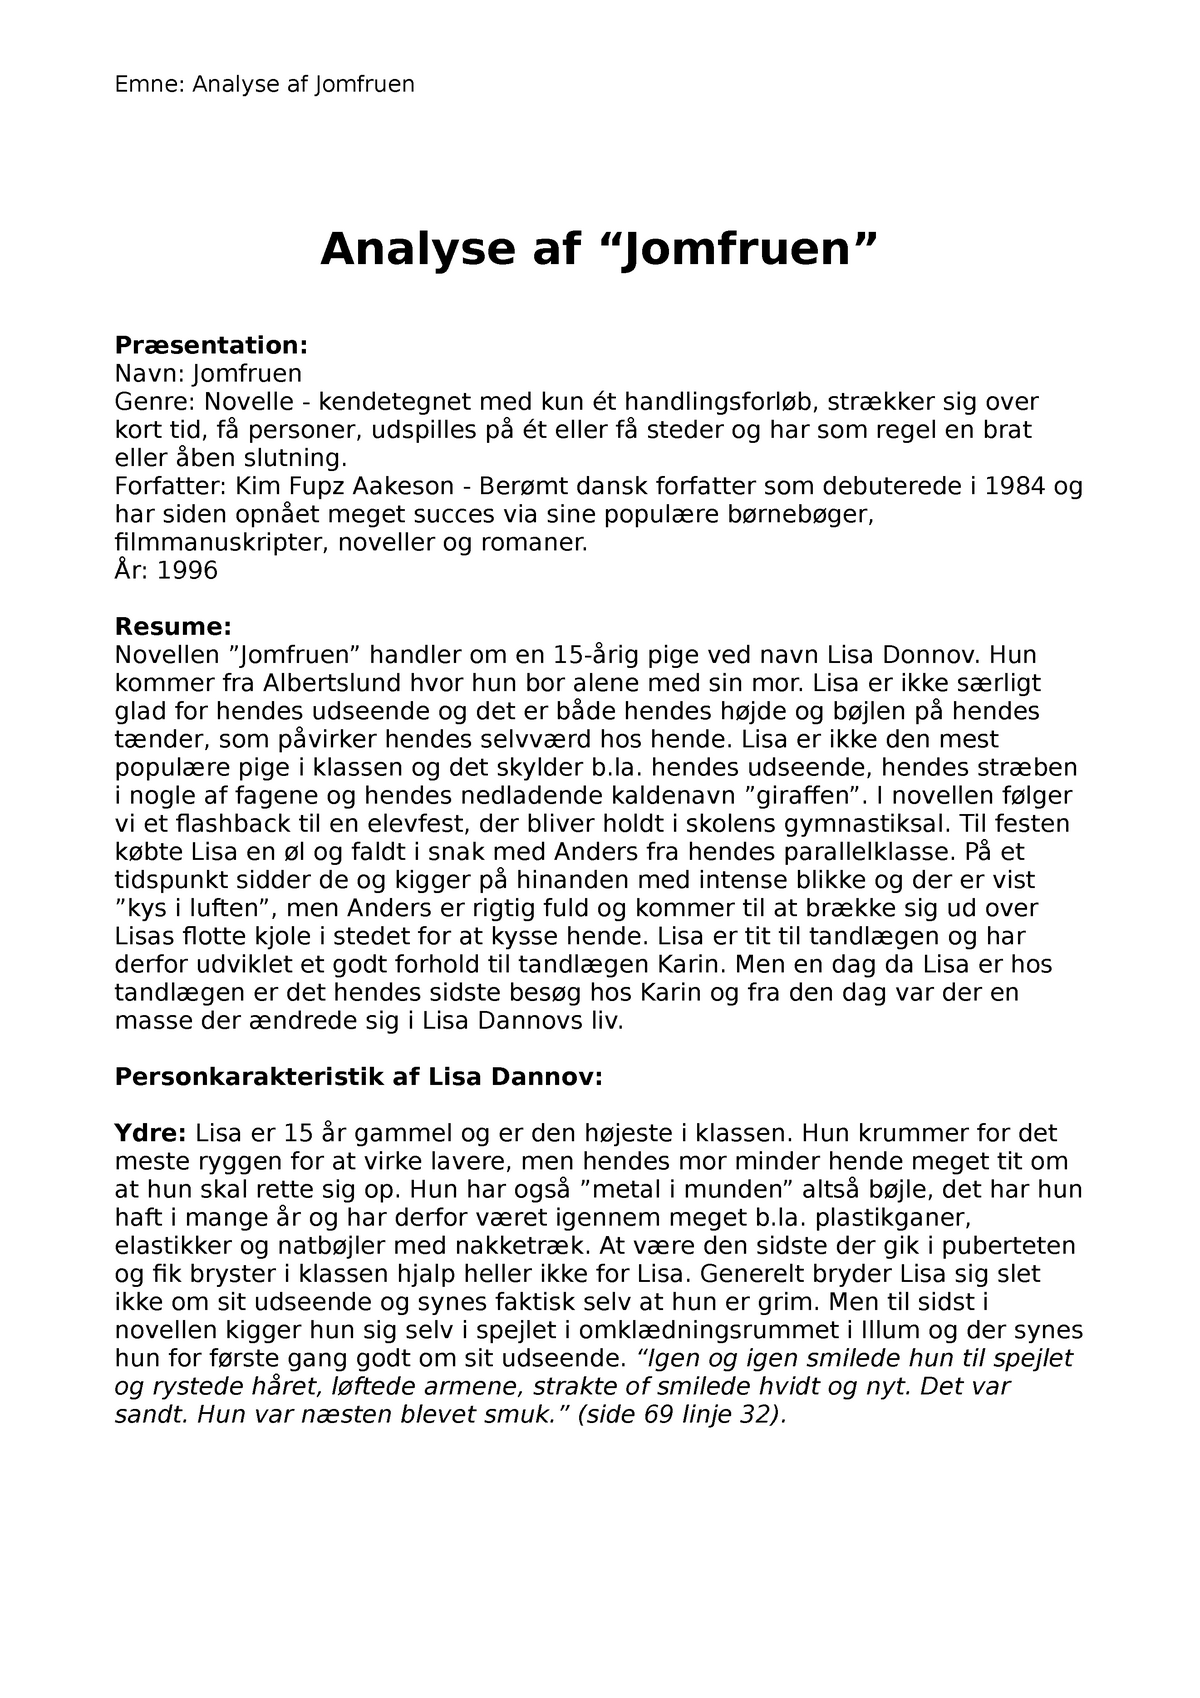 Analyse af jomfruen - Emne: Analyse af Jomfruen Analyse af Præsentation: Jomfruen - Studocu